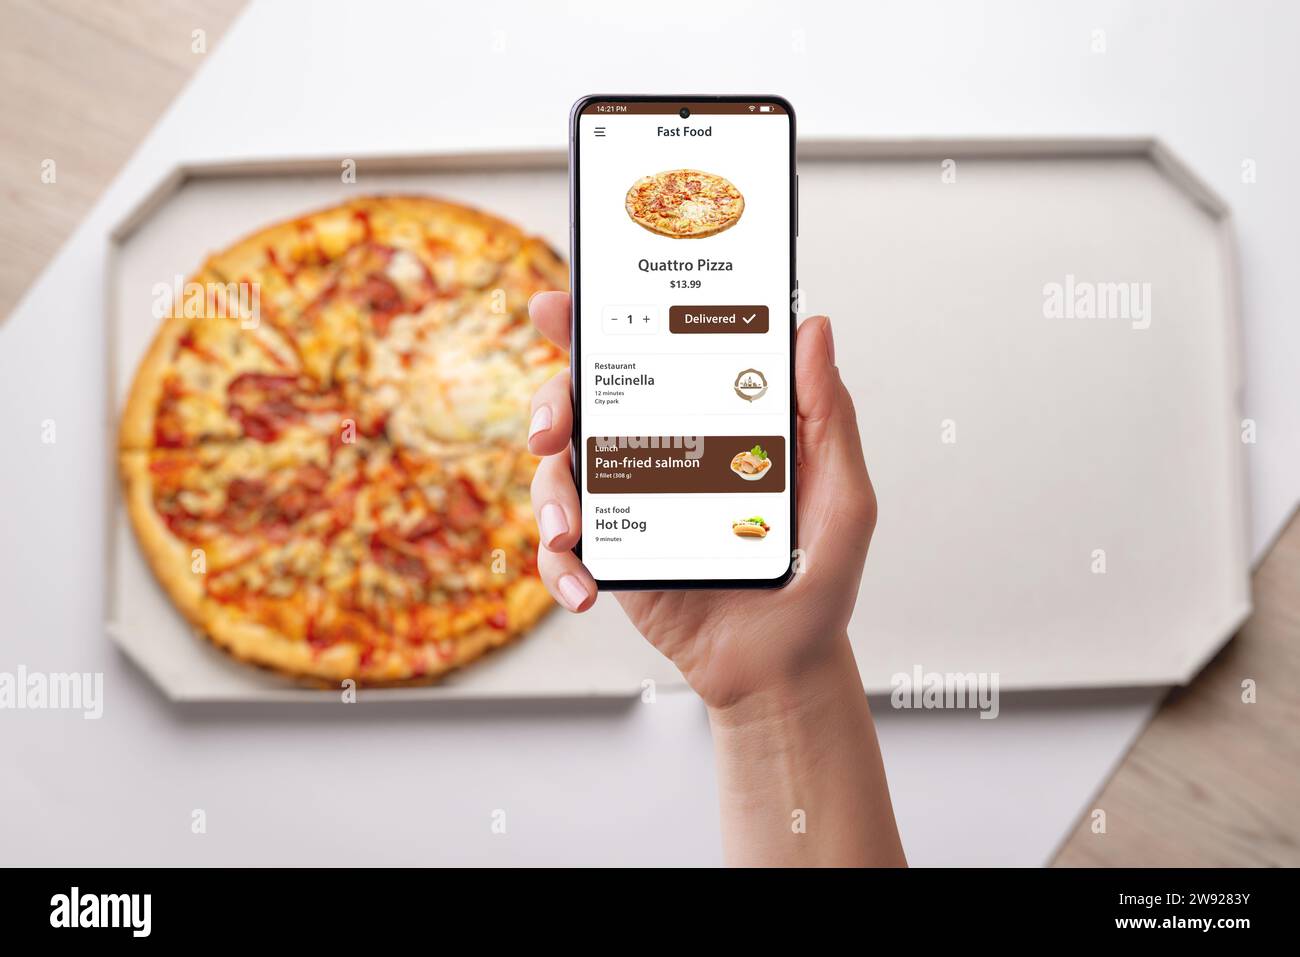 Frau bestellt und genießt eine Quatro-Pizza, die über eine moderne Smartphone-App an ihren Schreibtisch geliefert wird. Nahtloses Design für ein köstliches kulinarisches Erlebnis Stockfoto